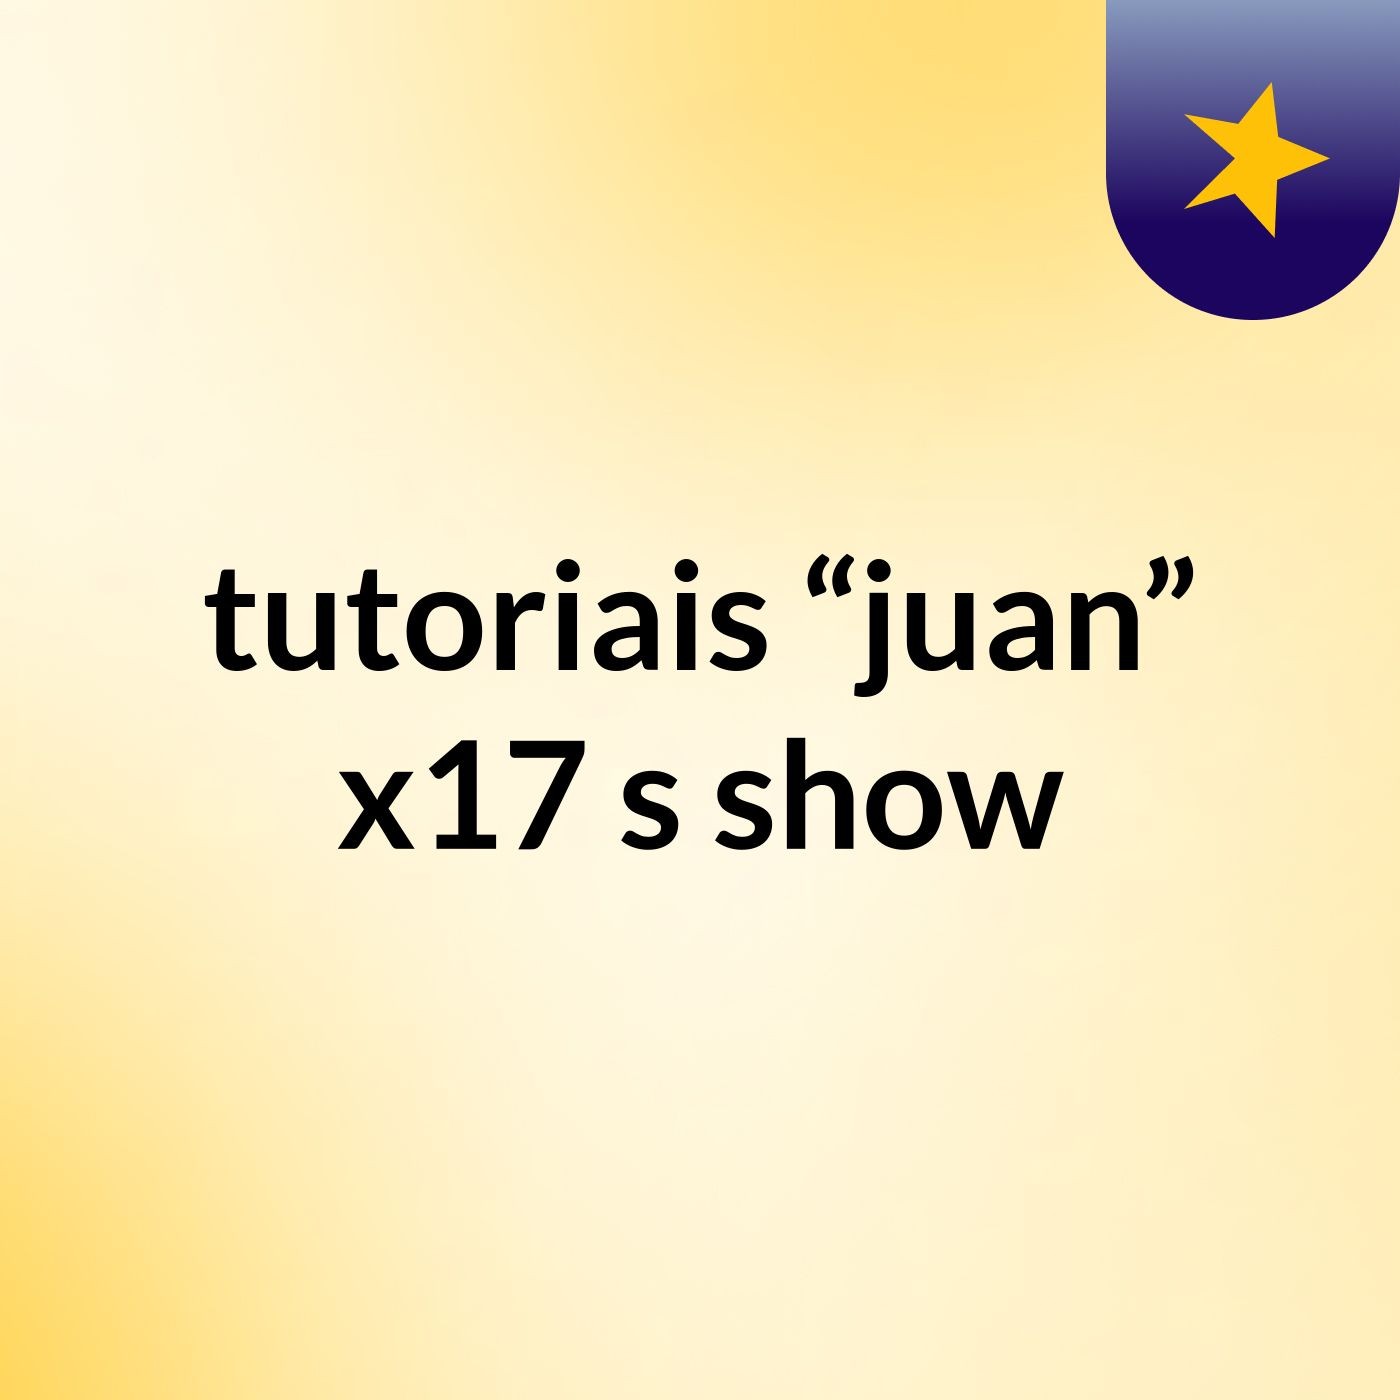 tutoriais “juan” x17's show